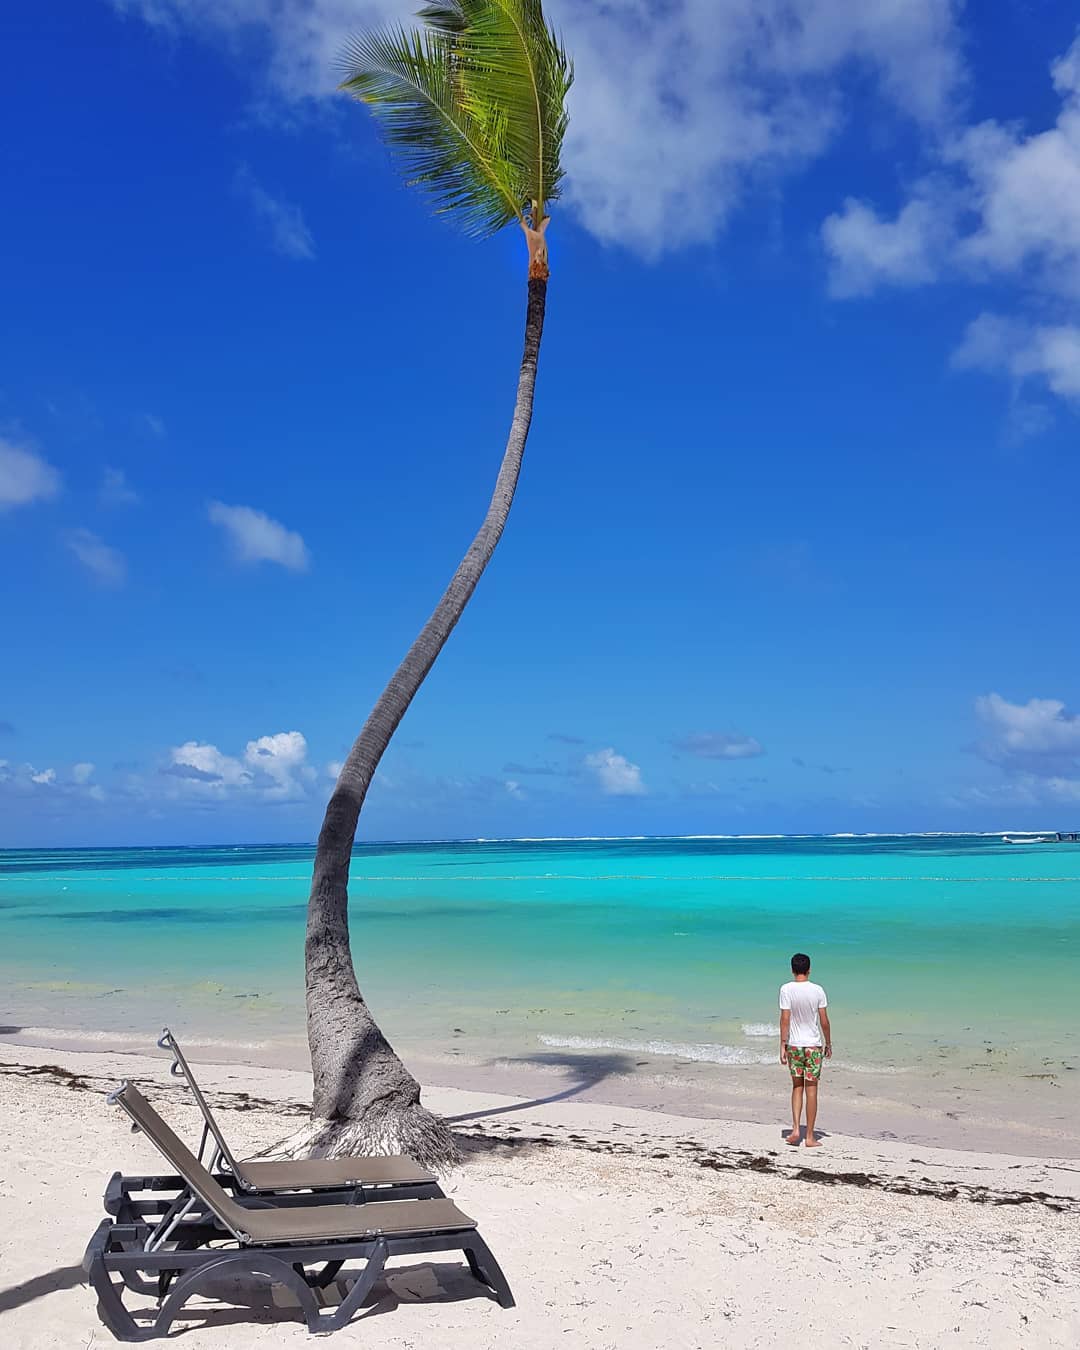 Апрель пляжный отдых страны - Доминикана